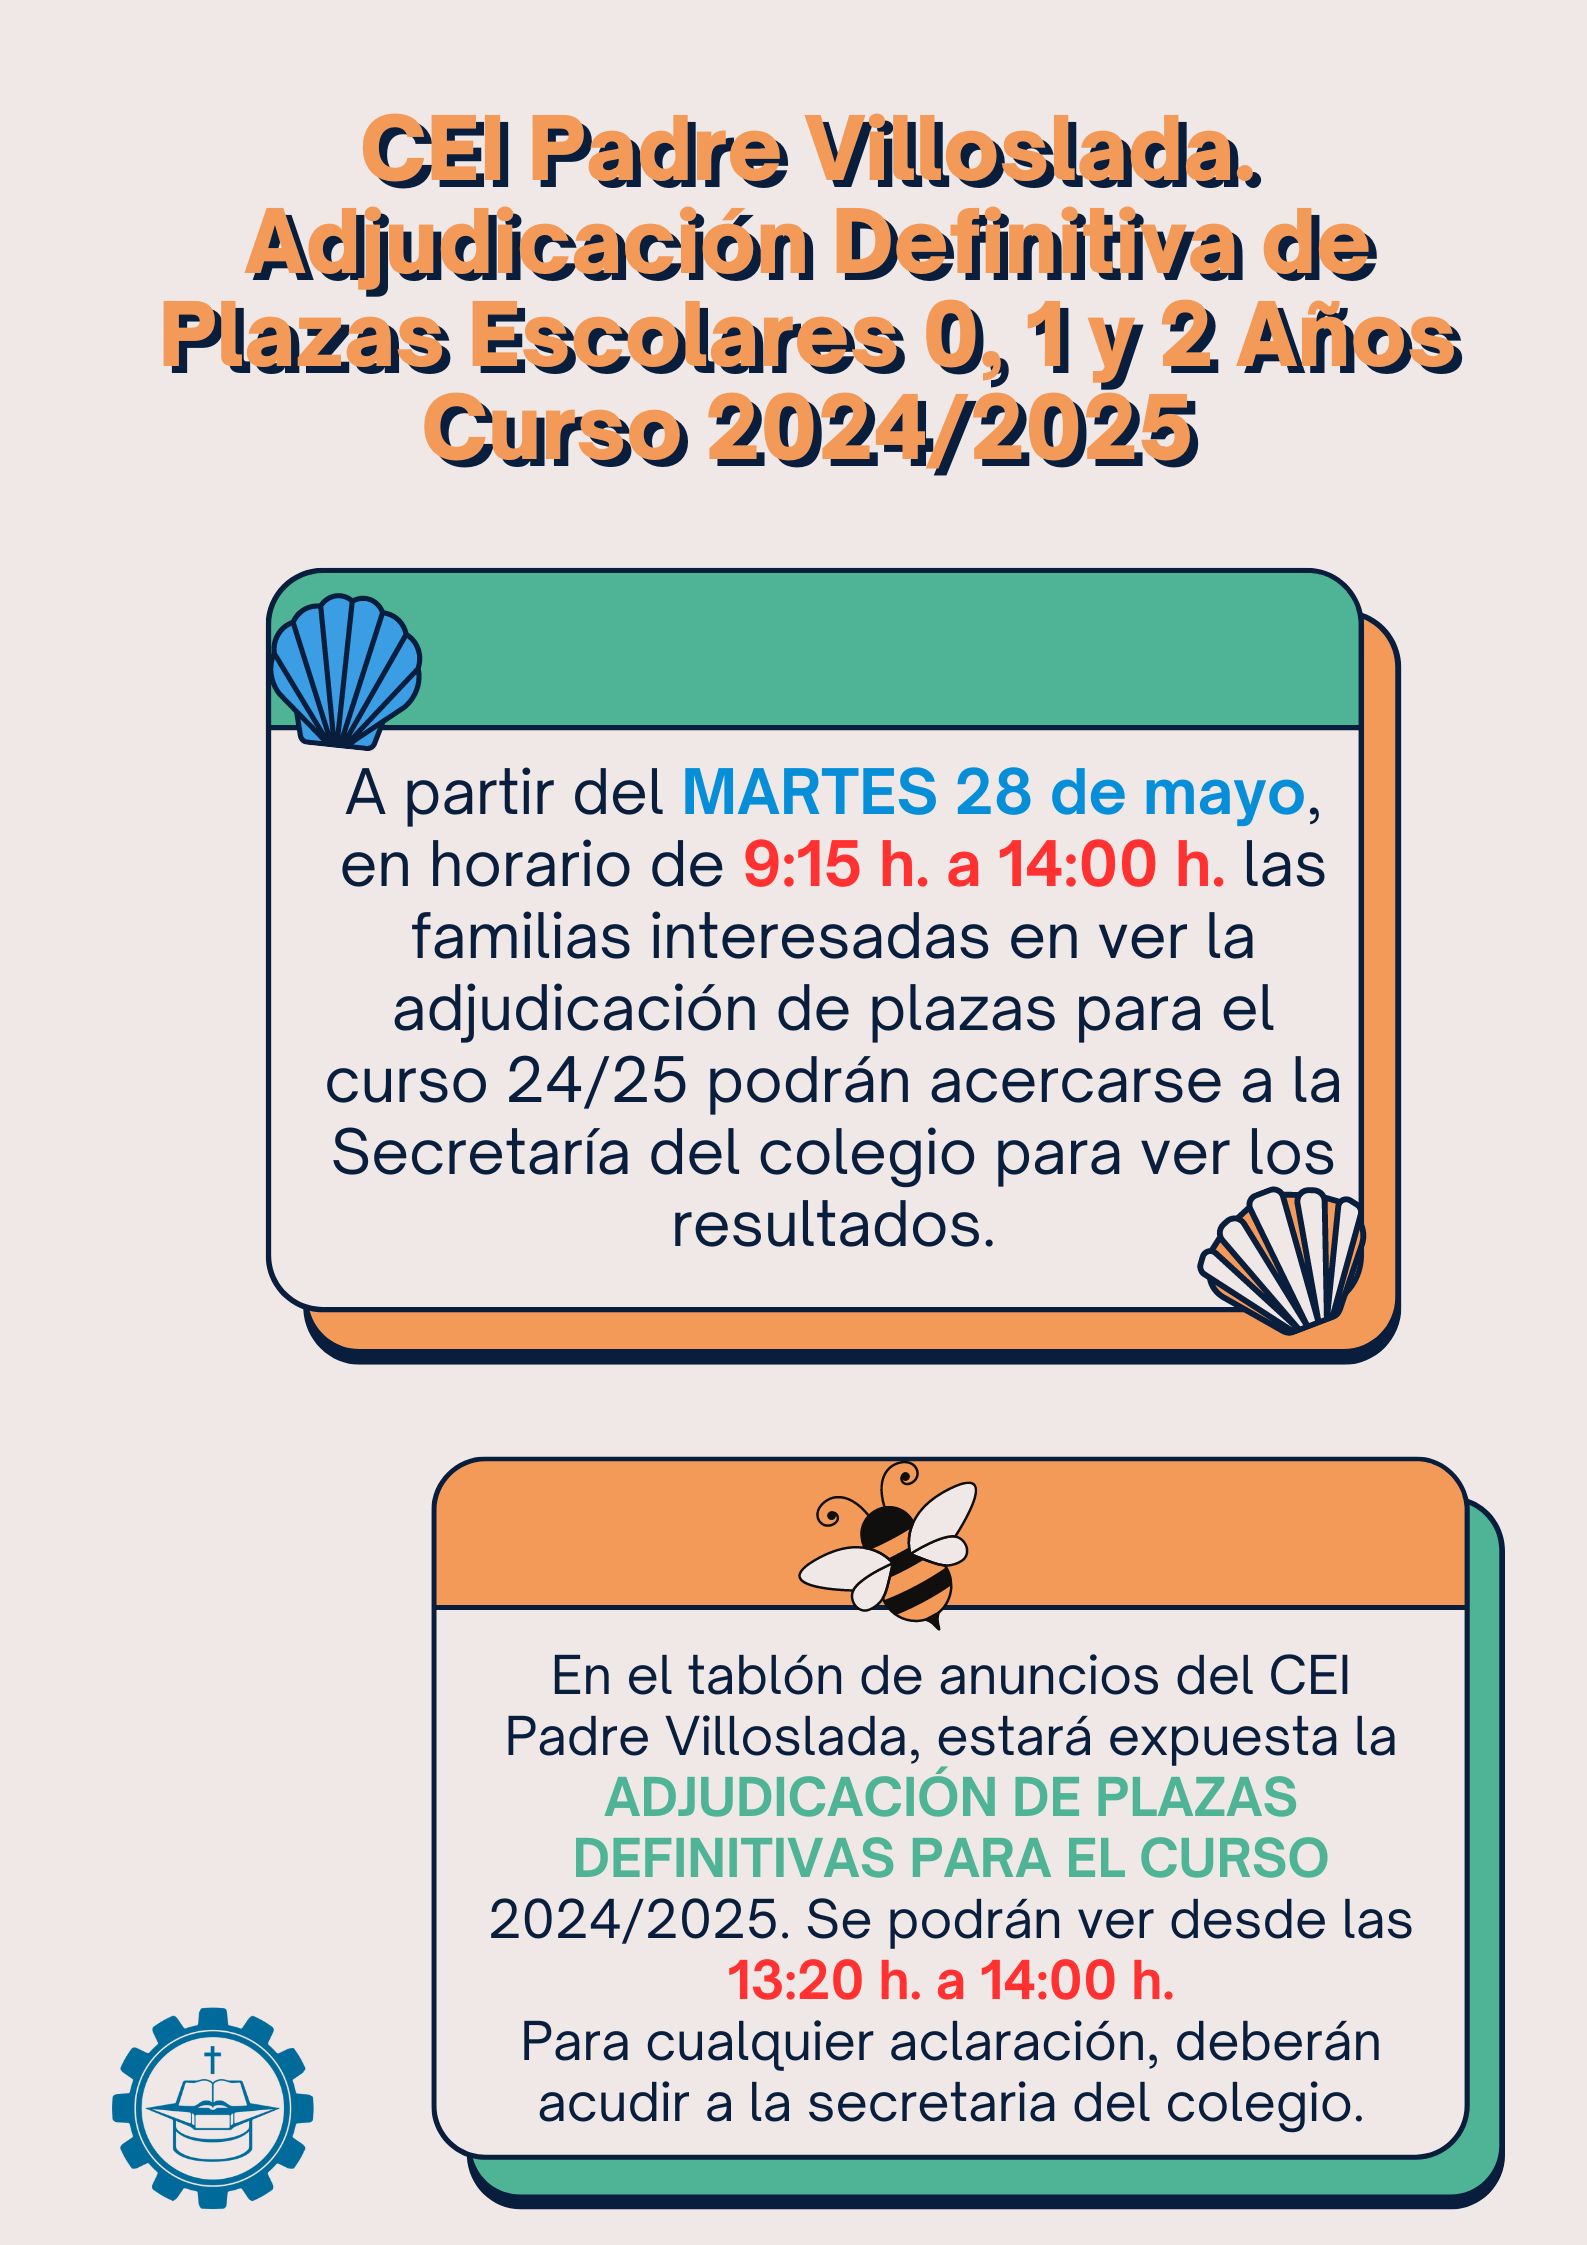 CEI Padre Villoslada. Adjudicación Definitiva de Plazas Escolares 0, 1 y 2 Años. Curso 2024/2025.